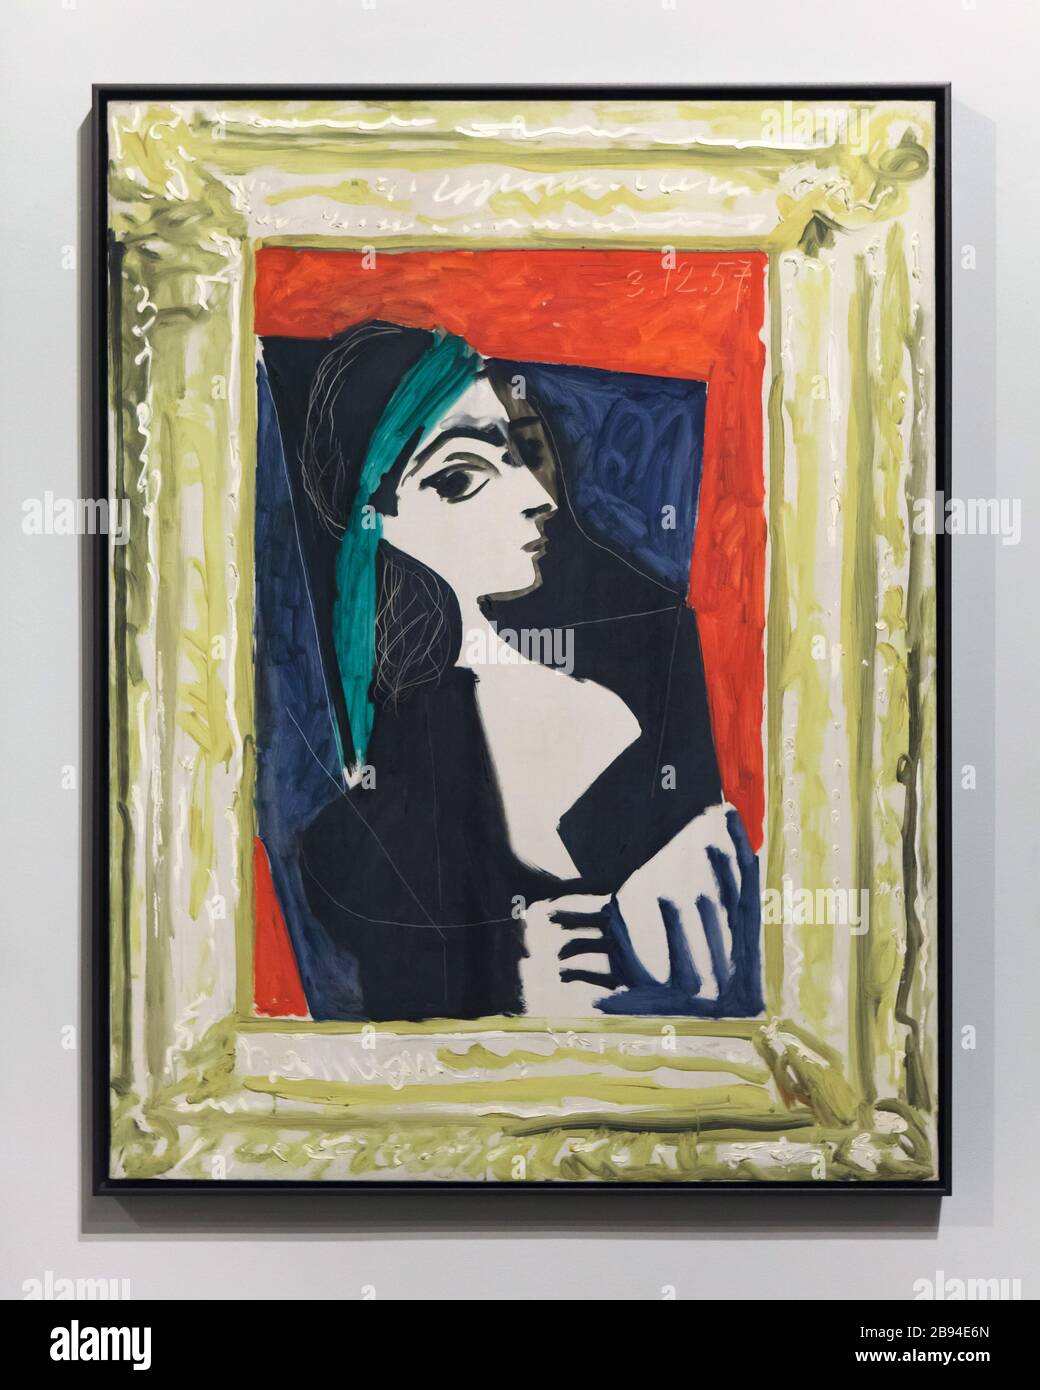 Peinture "Jacqueline" de Pablo Picasso peinte à Cannes (France) le 3 décembre 1957 sur exposition au Museuu Picasso (Musée Picasso) à Barcelone, Catalogne, Espagne. Jacqueline Roque plus tard connue sous le nom de Jacqueline Picasso était la muse et la deuxième épouse de Pablo Picasso. Ils se sont mariés le 2 mars 1961. Banque D'Images